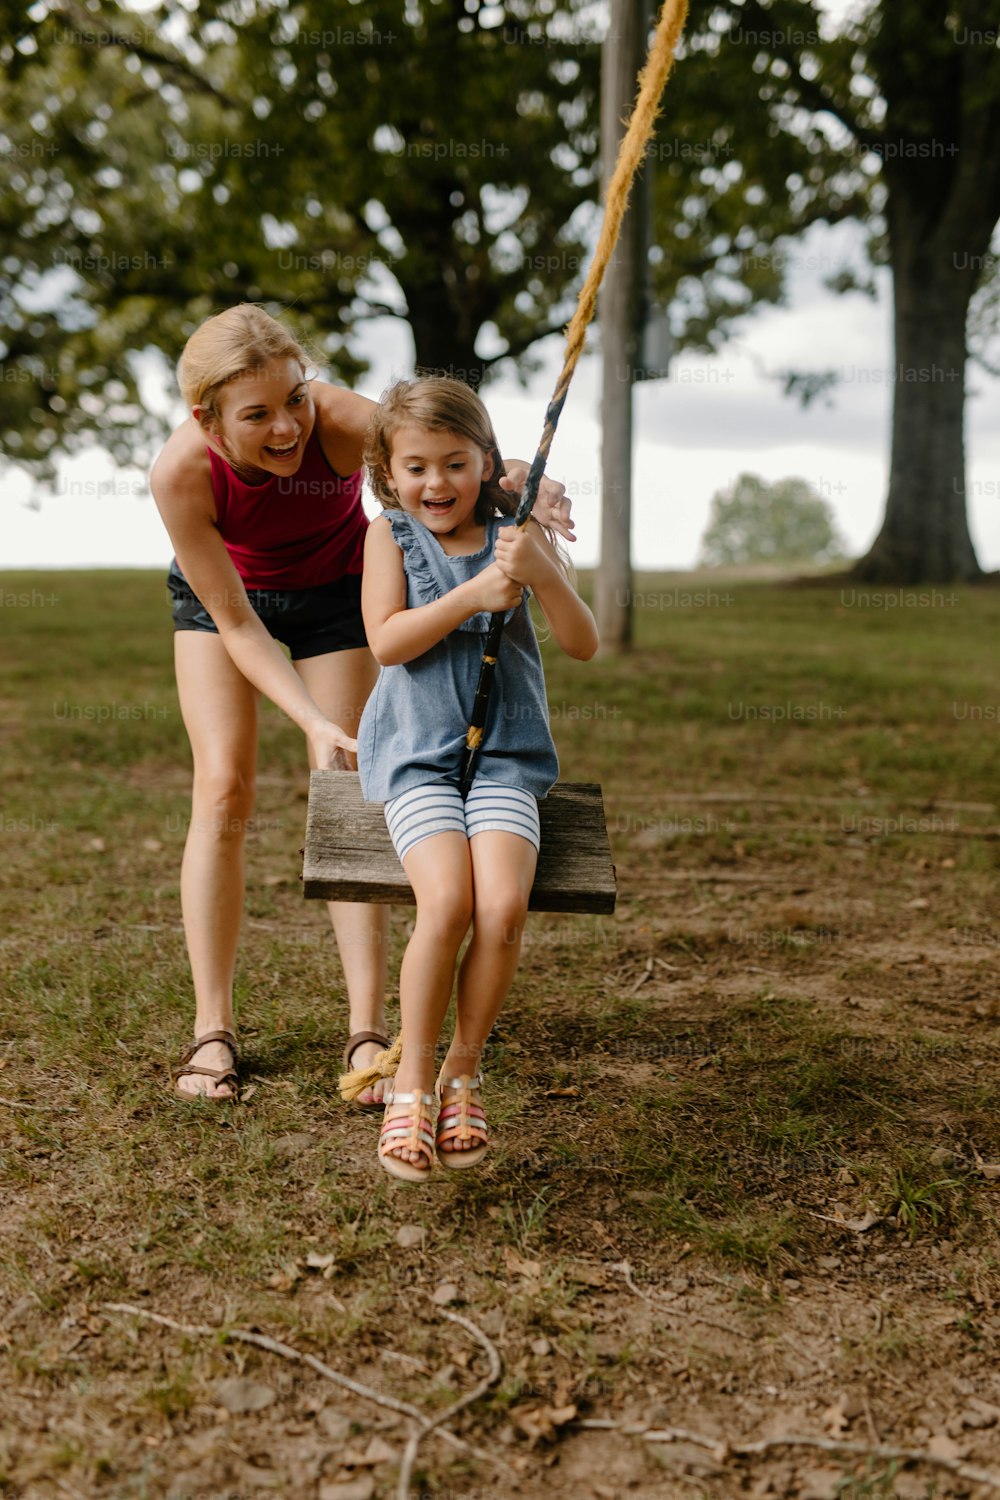 uma jovem segurando um taco de beisebol ao lado de uma jovem